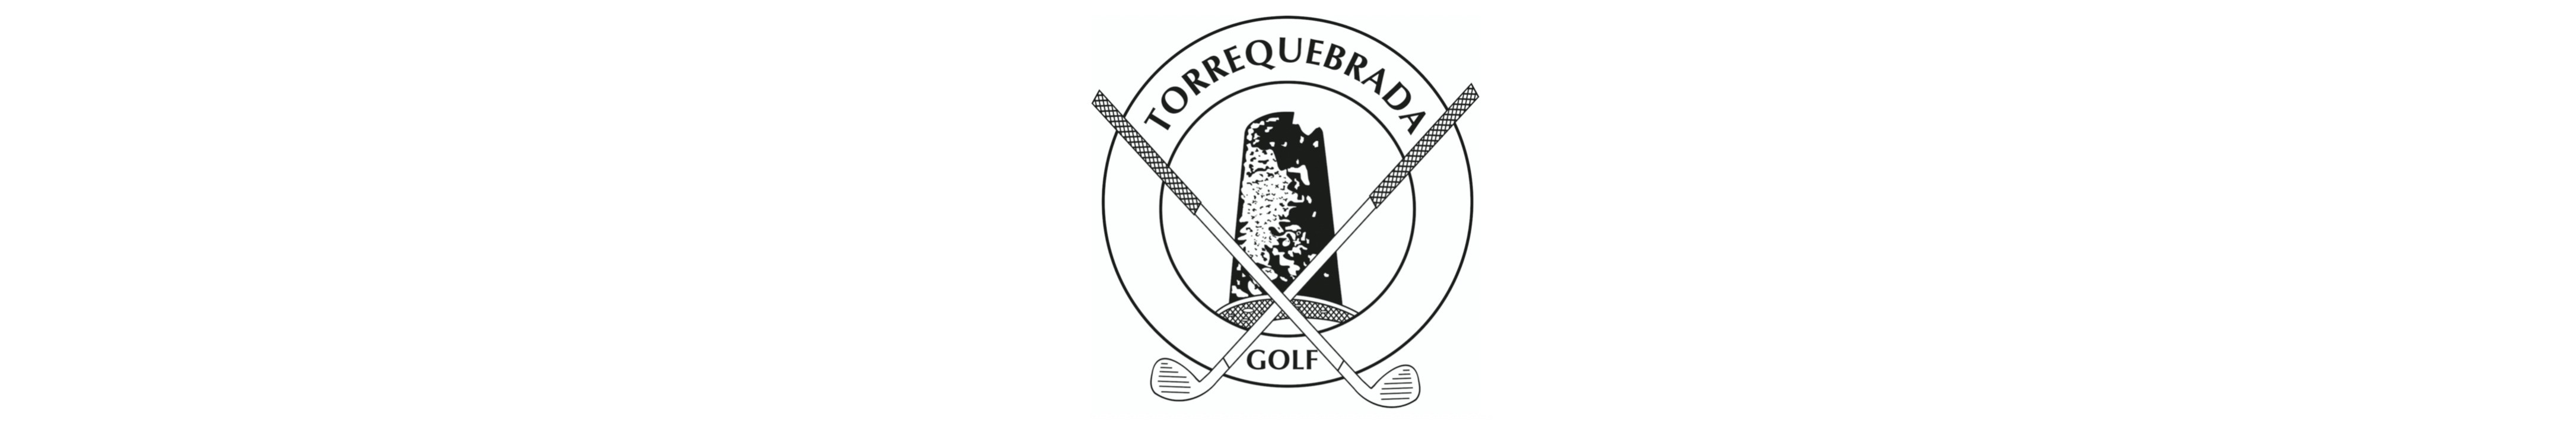 Restaurante Golf Torrequebrada